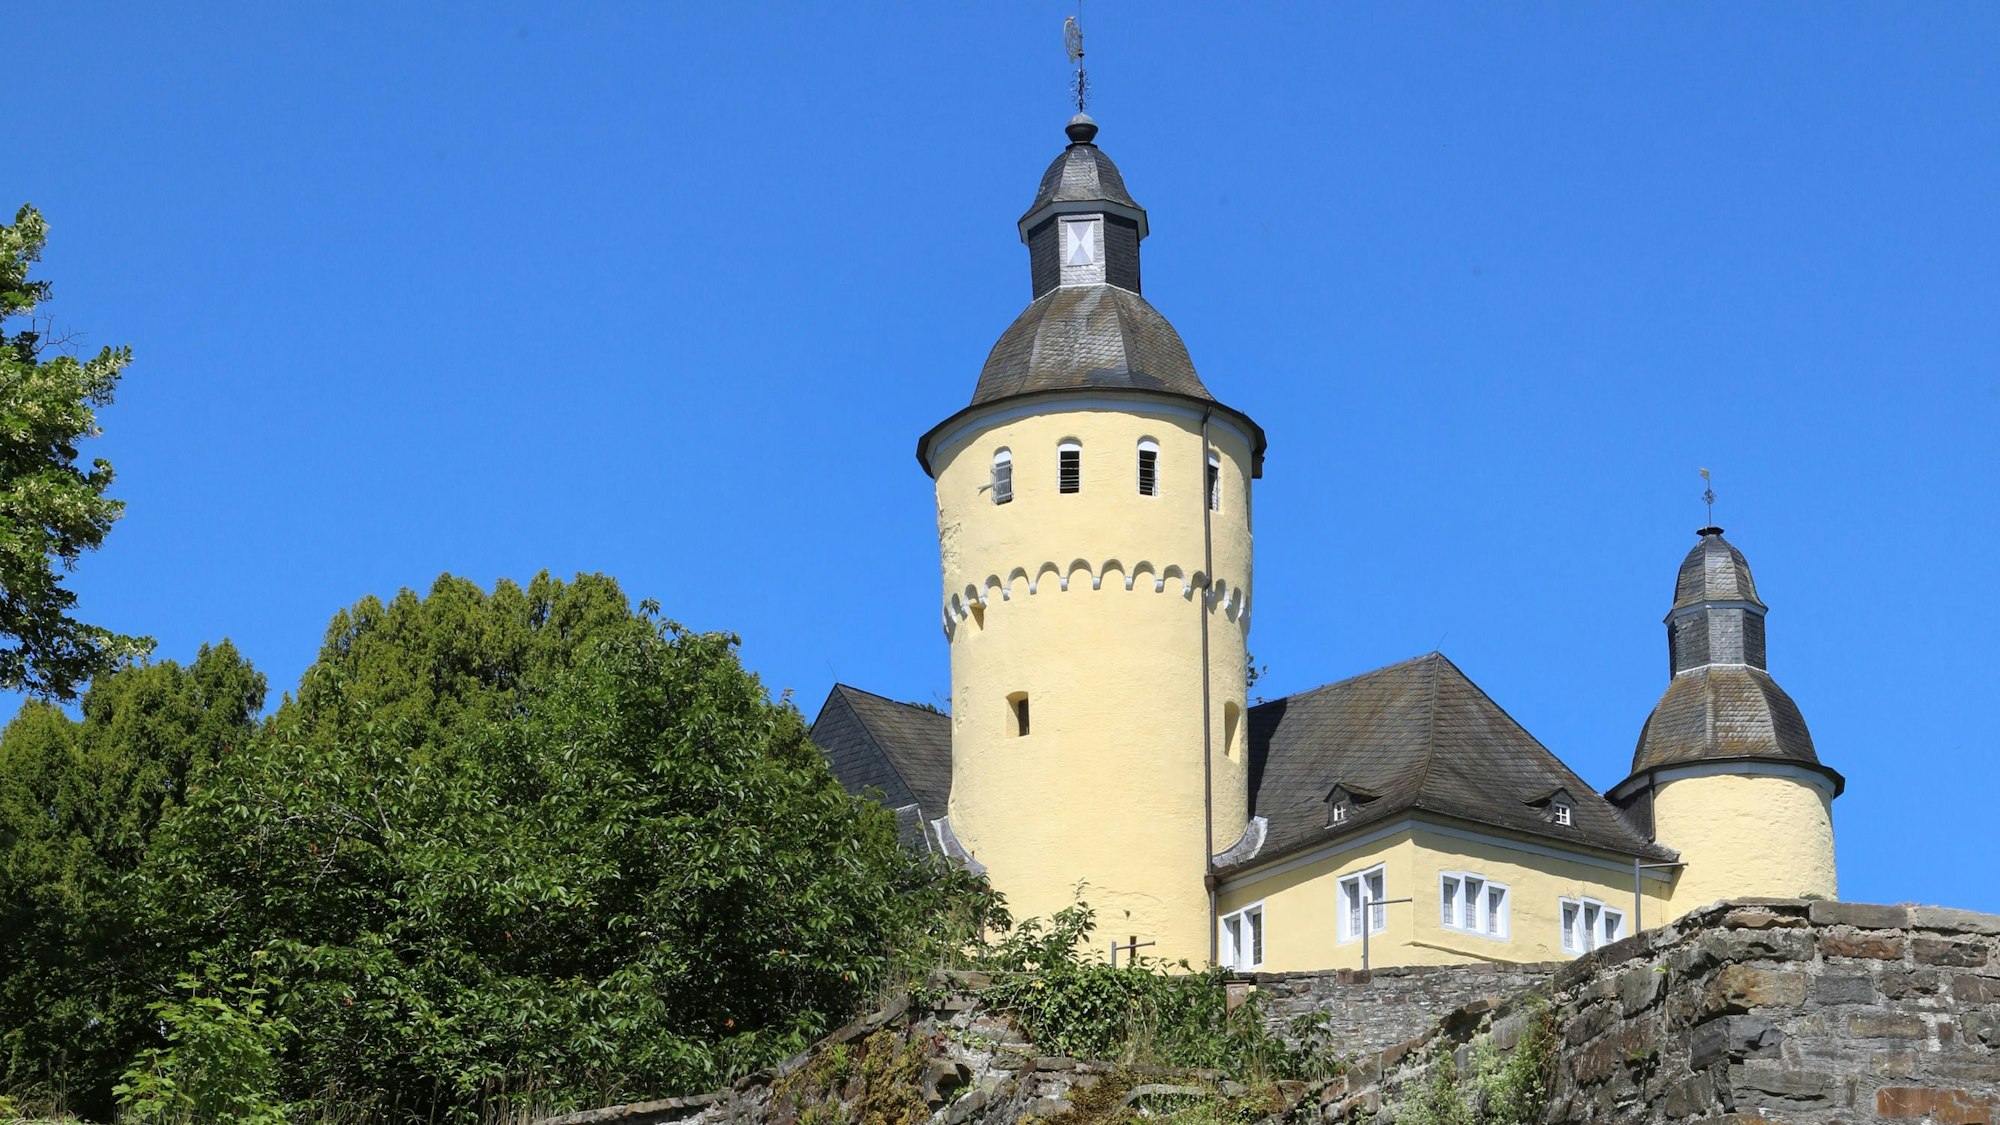 Blick auf das gelbe Schloss Homburg